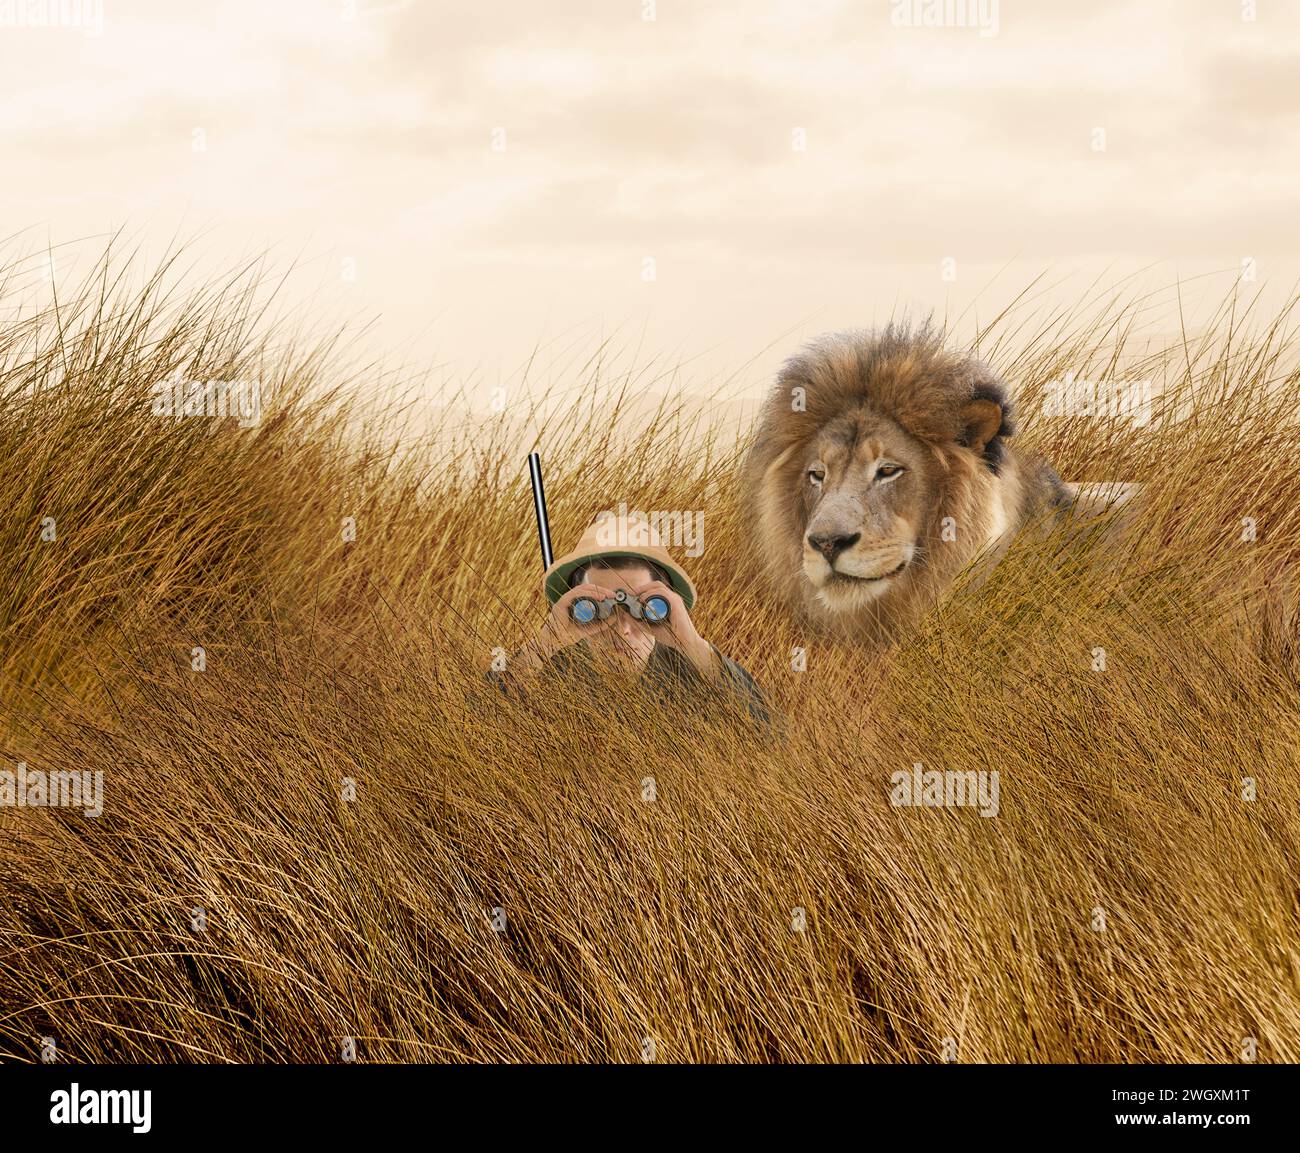 Un lion se faufile derrière un casque à moelle portant un chasseur, dans de grandes herbes, dans un regard drôle sur le chasseur vs le chassé. Banque D'Images